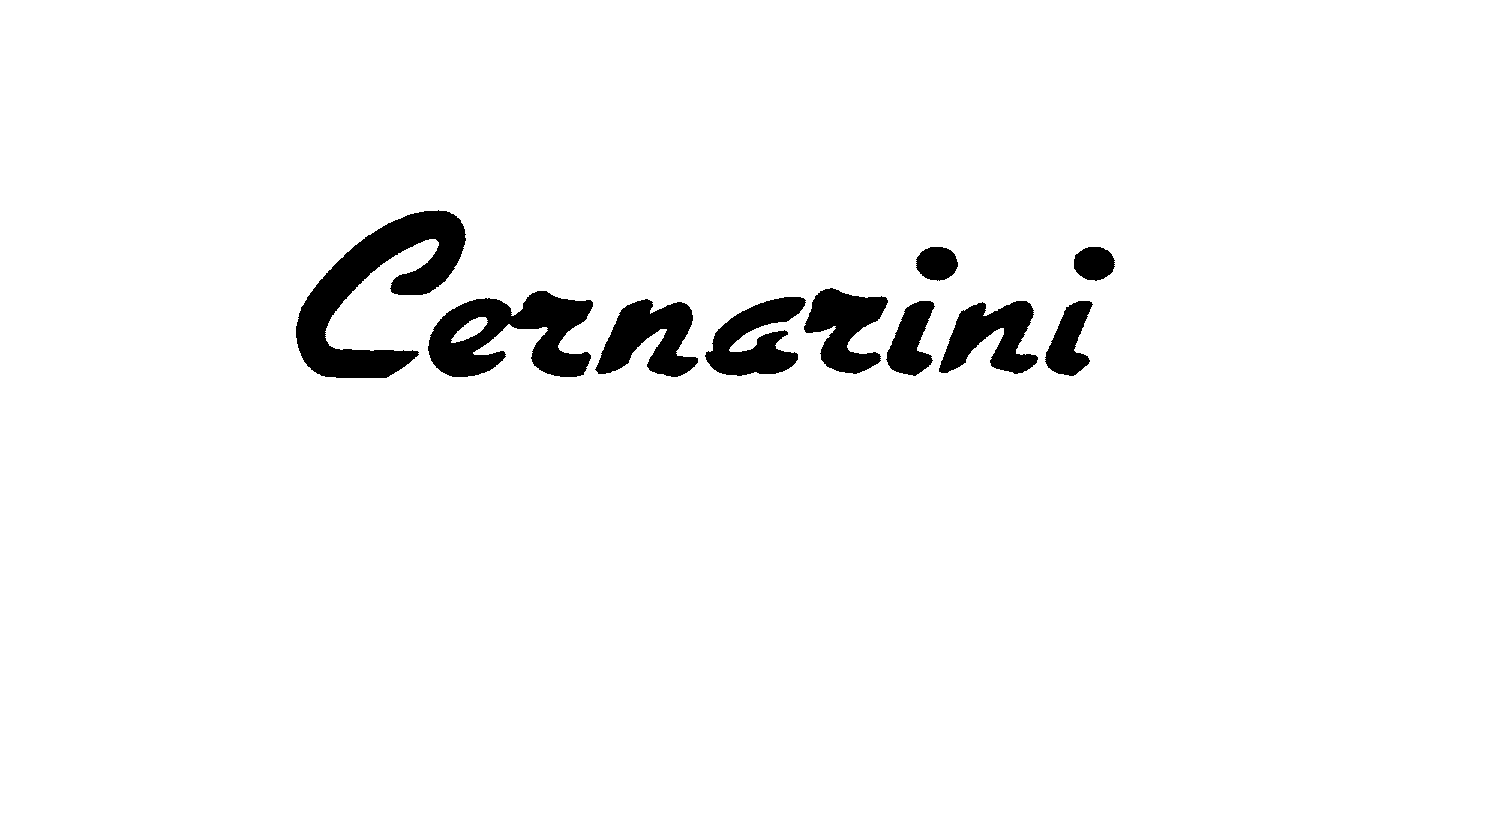  CERNARINI